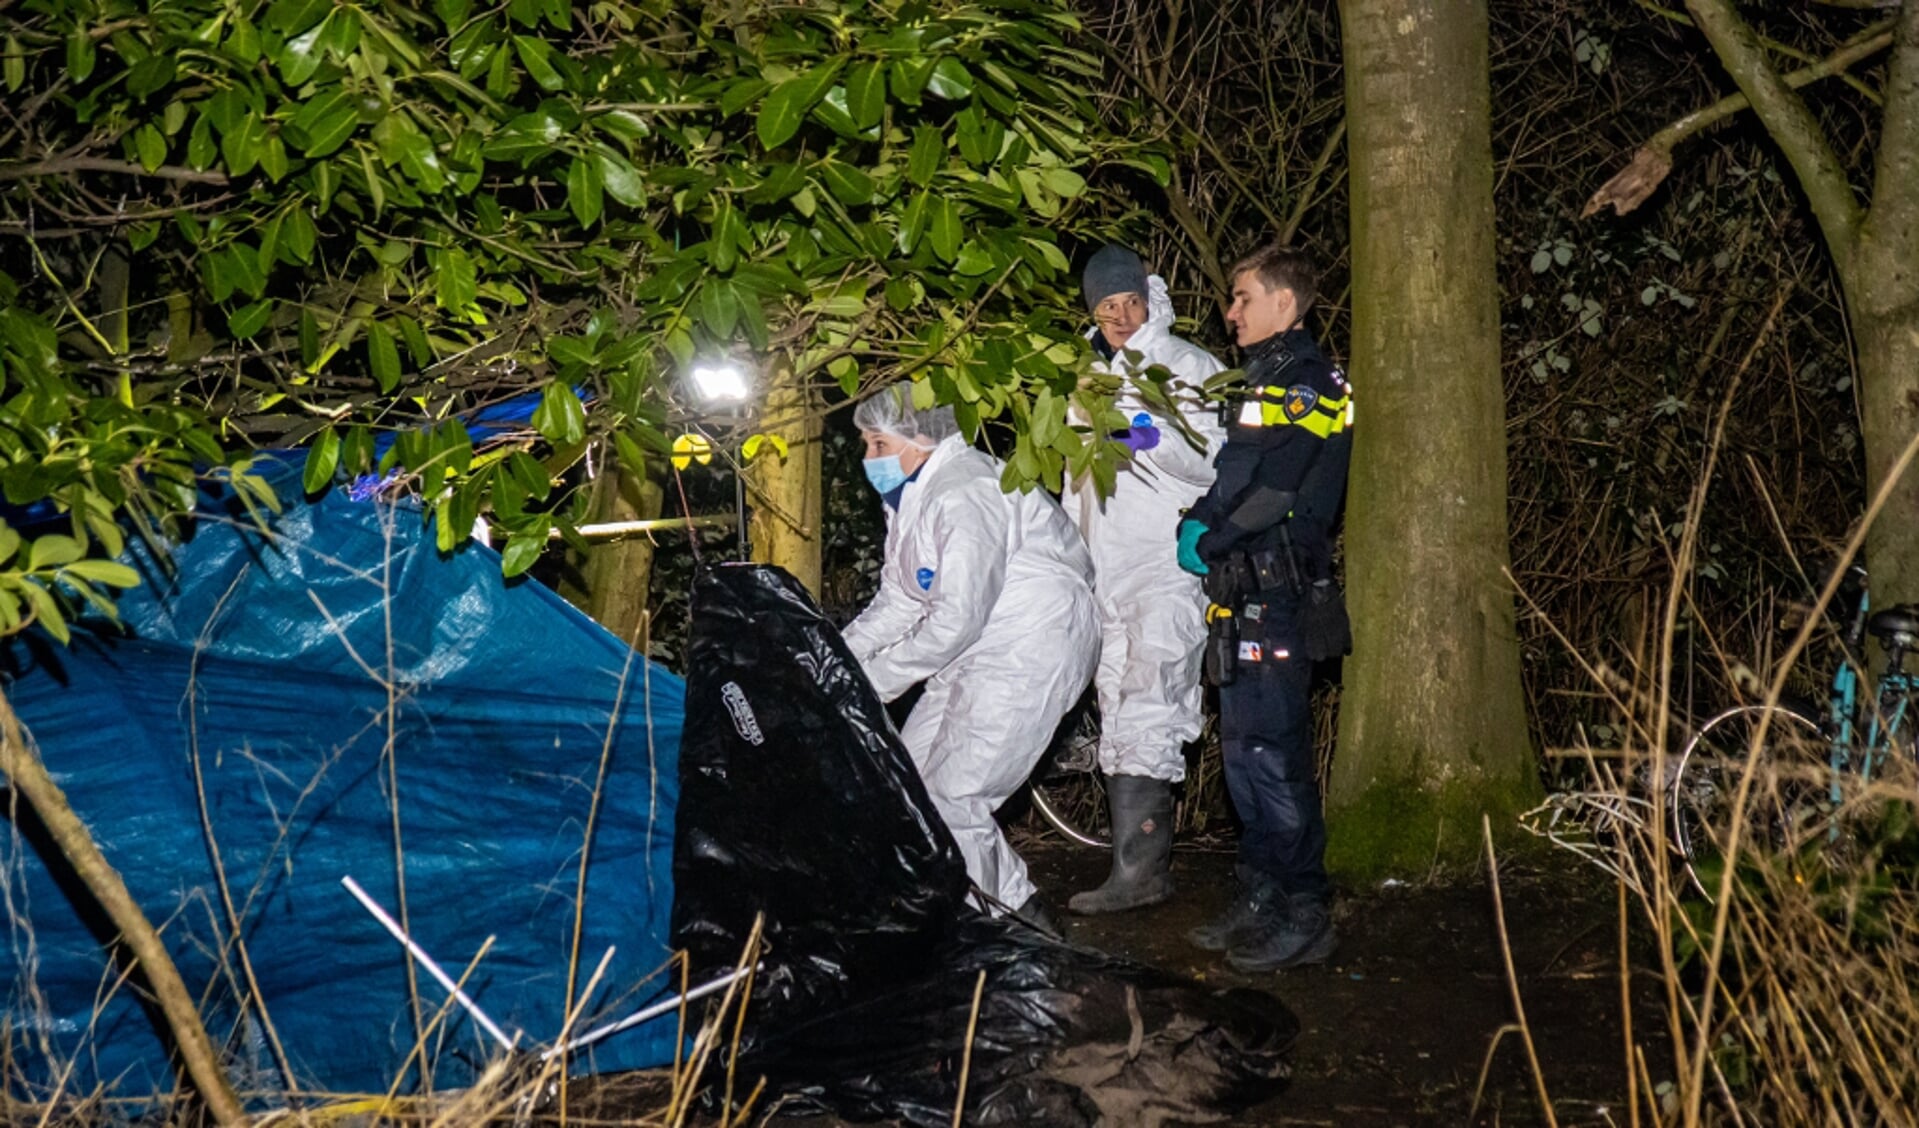 De forensische opsporing van de politie doet onderzoek naar de doodsoorzaak. Foto: Flashphoto.nl